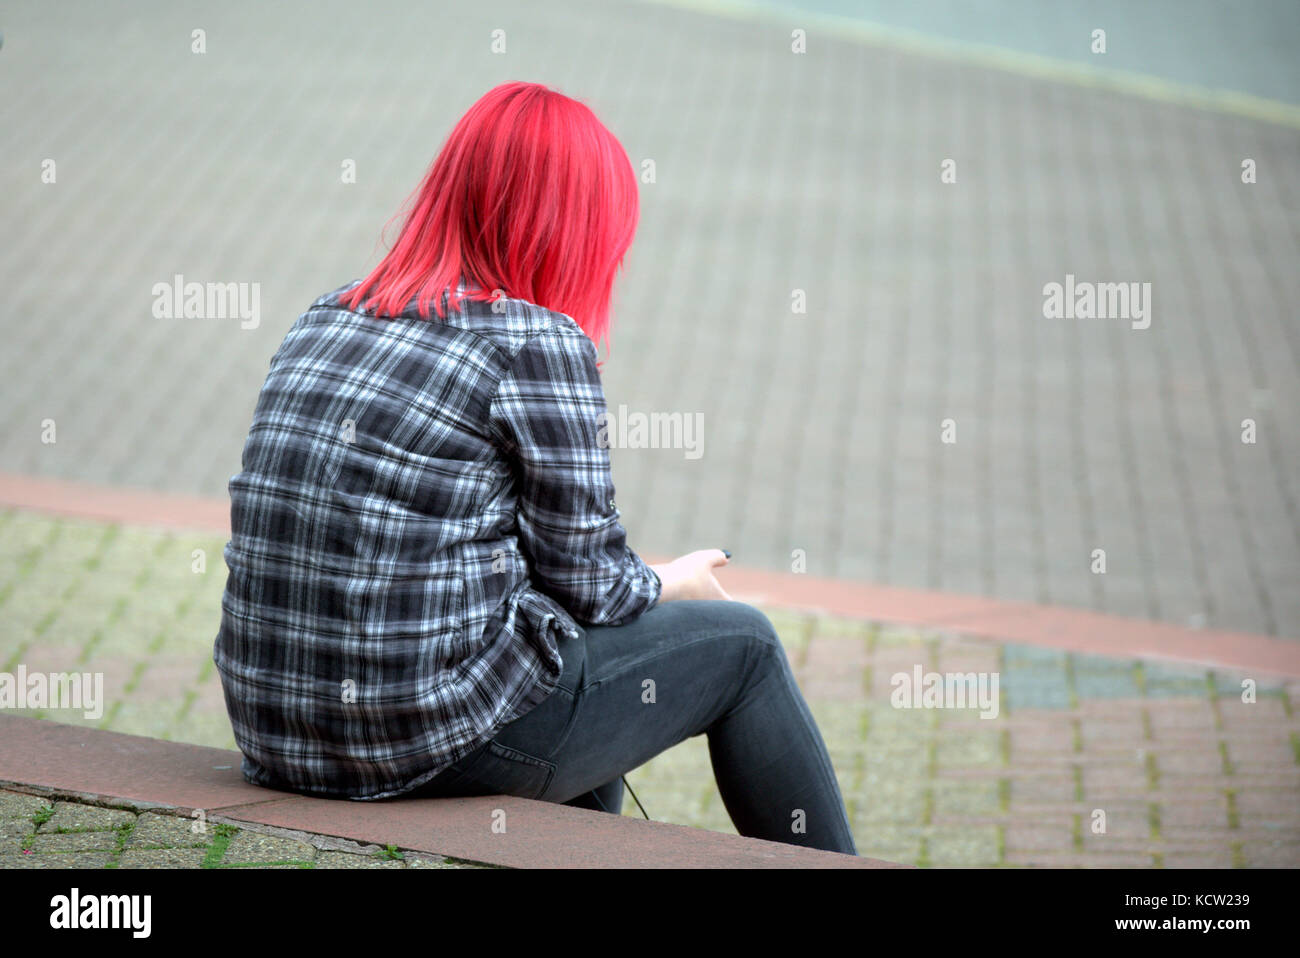 Les cheveux teints en rouge femme fille ado seul assis sur les marches à l'aide de smart mobile phone Banque D'Images